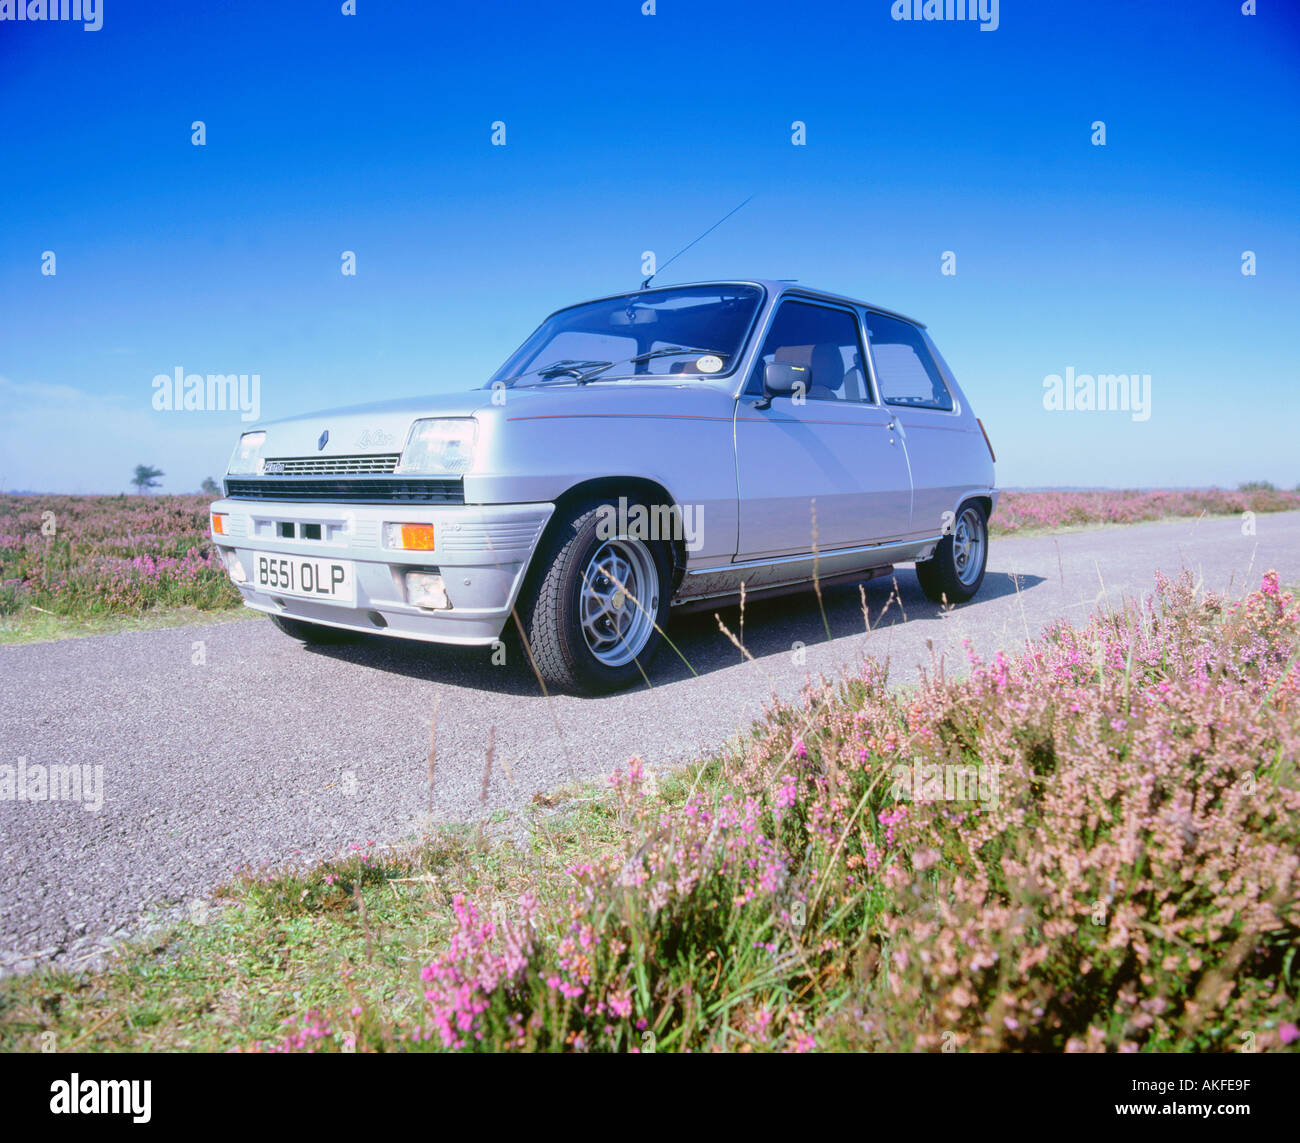 Auto-Turbo isoliert auf weißem Hintergrund Stockfotografie - Alamy